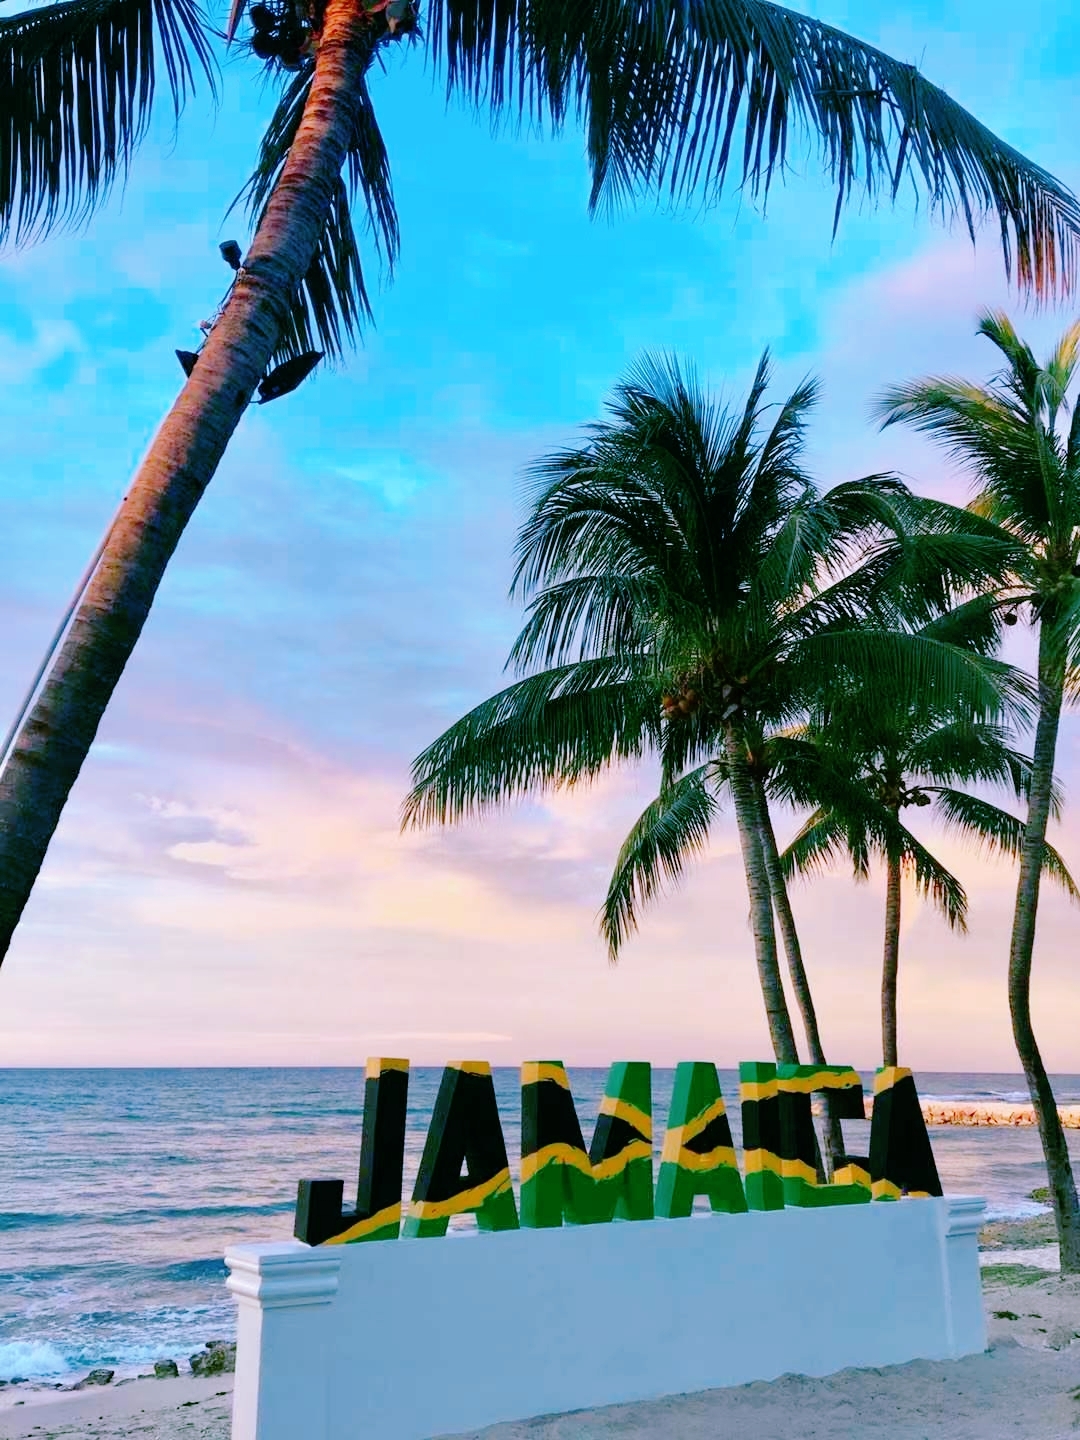 🌊【免签岛国牙买加】🐠一生一定要去次加勒比海岛游